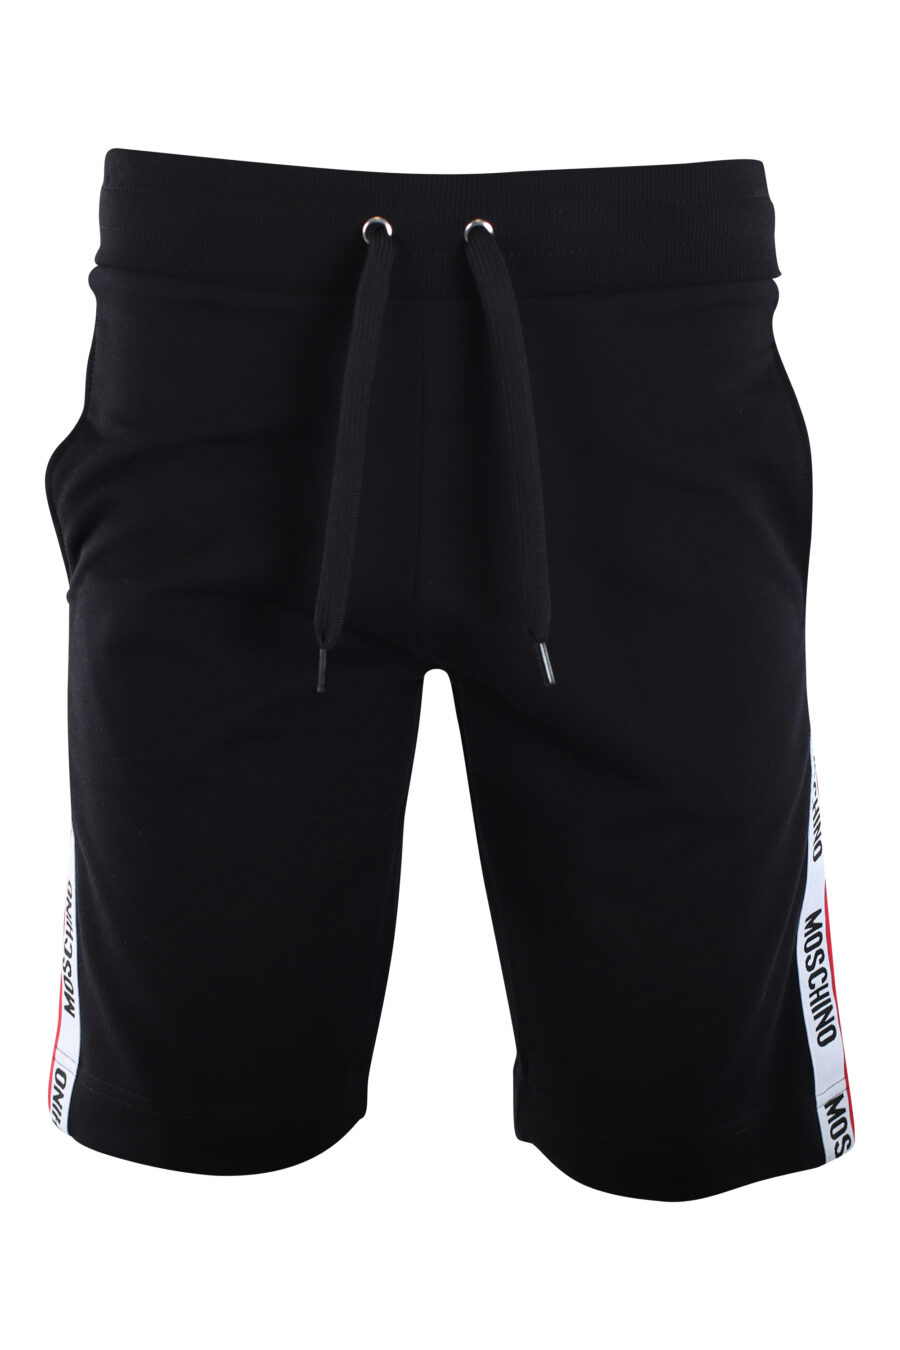 Pantalón de chándal negro con logo laterales "underbear" - IMG 2234